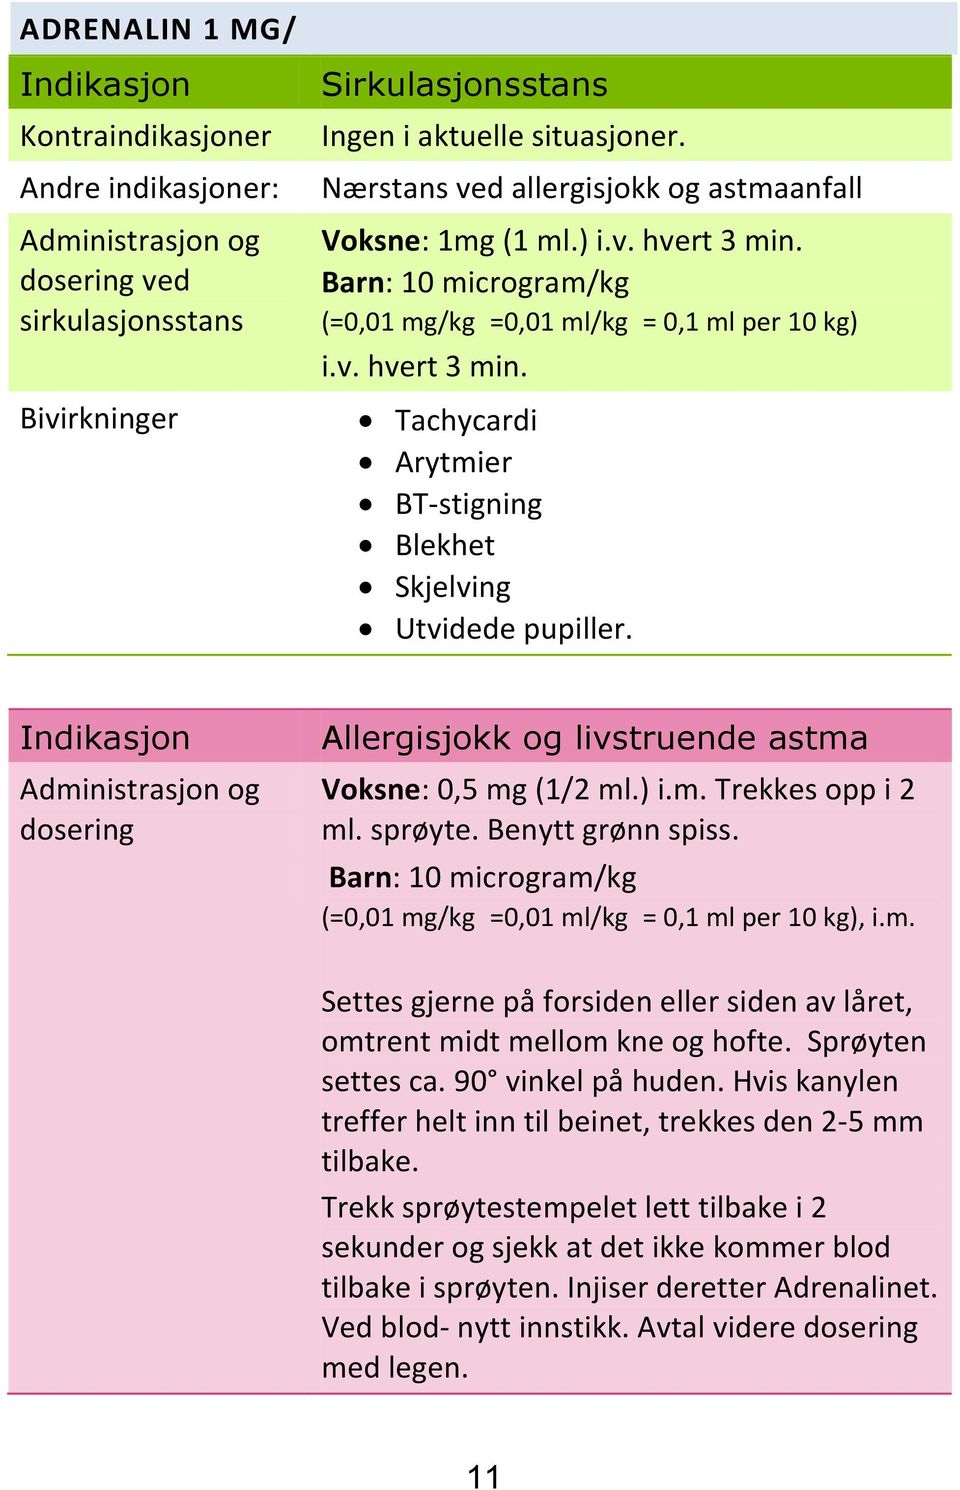 Indikasjon Administrasjon og dosering Allergisjokk og livstruende astma Voksne: 0,5 mg (1/2 ml.) i.m. Trekkes opp i 2 ml. sprøyte. Benytt grønn spiss.